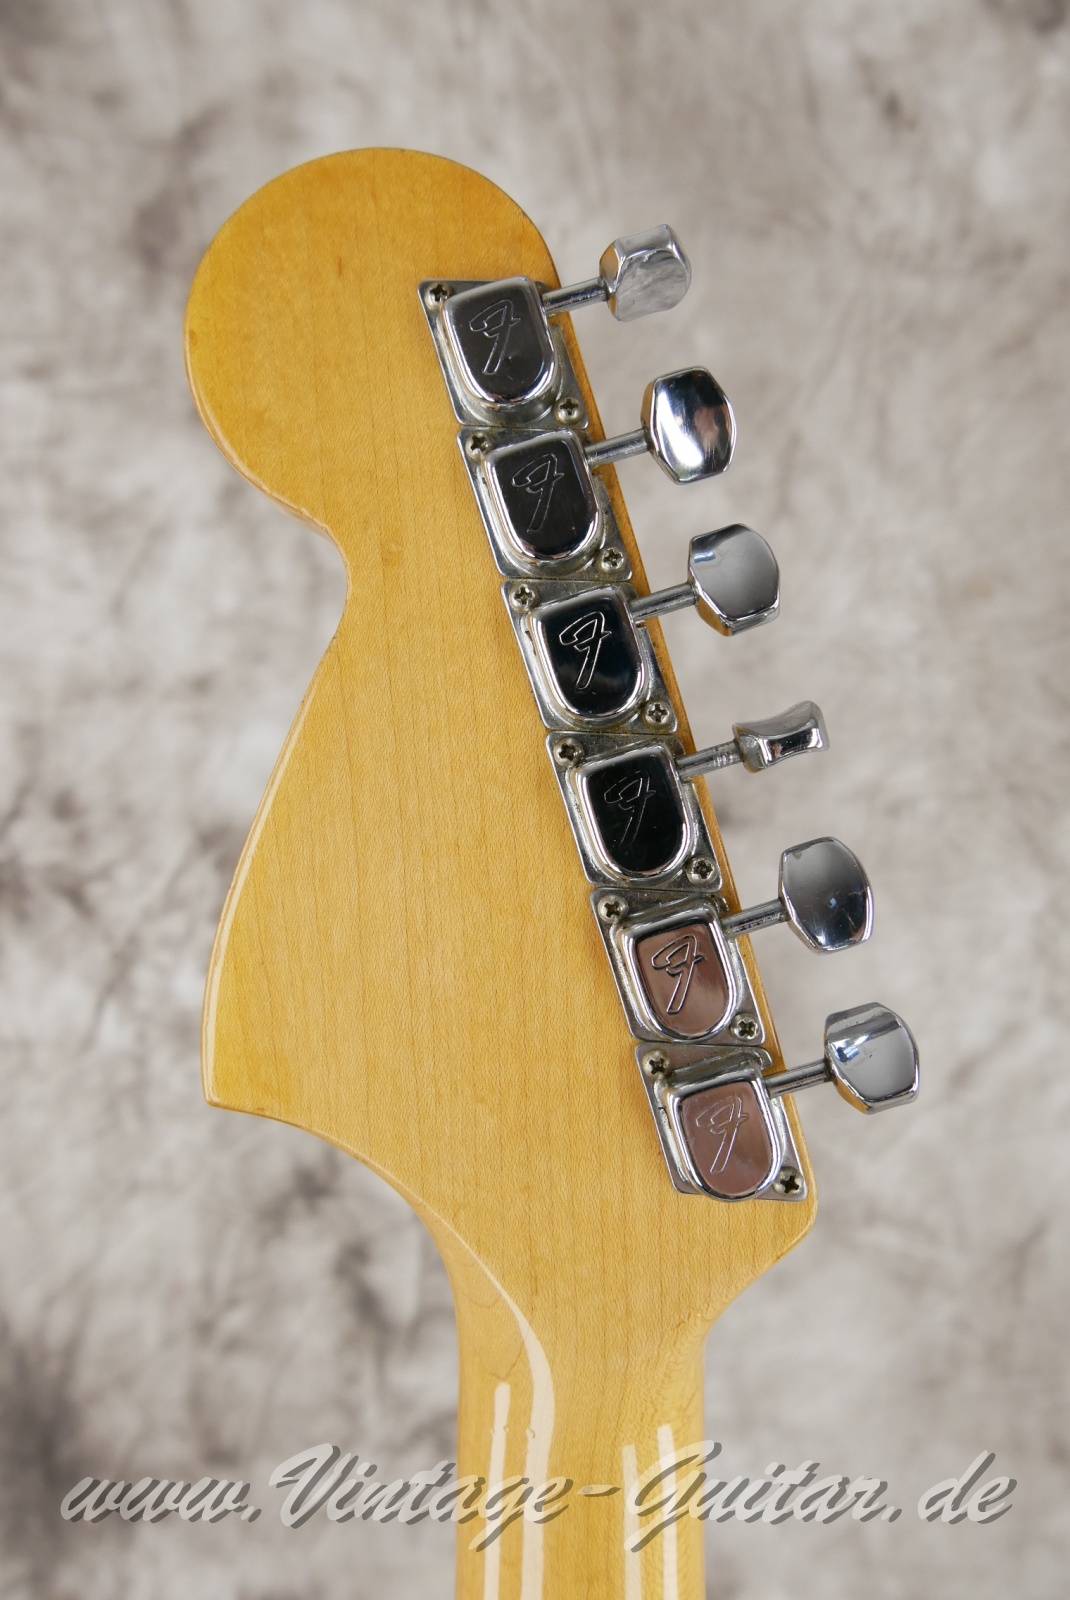 Fender-Stratocaster-1964-body-with-1969-neck-black-004.jpg